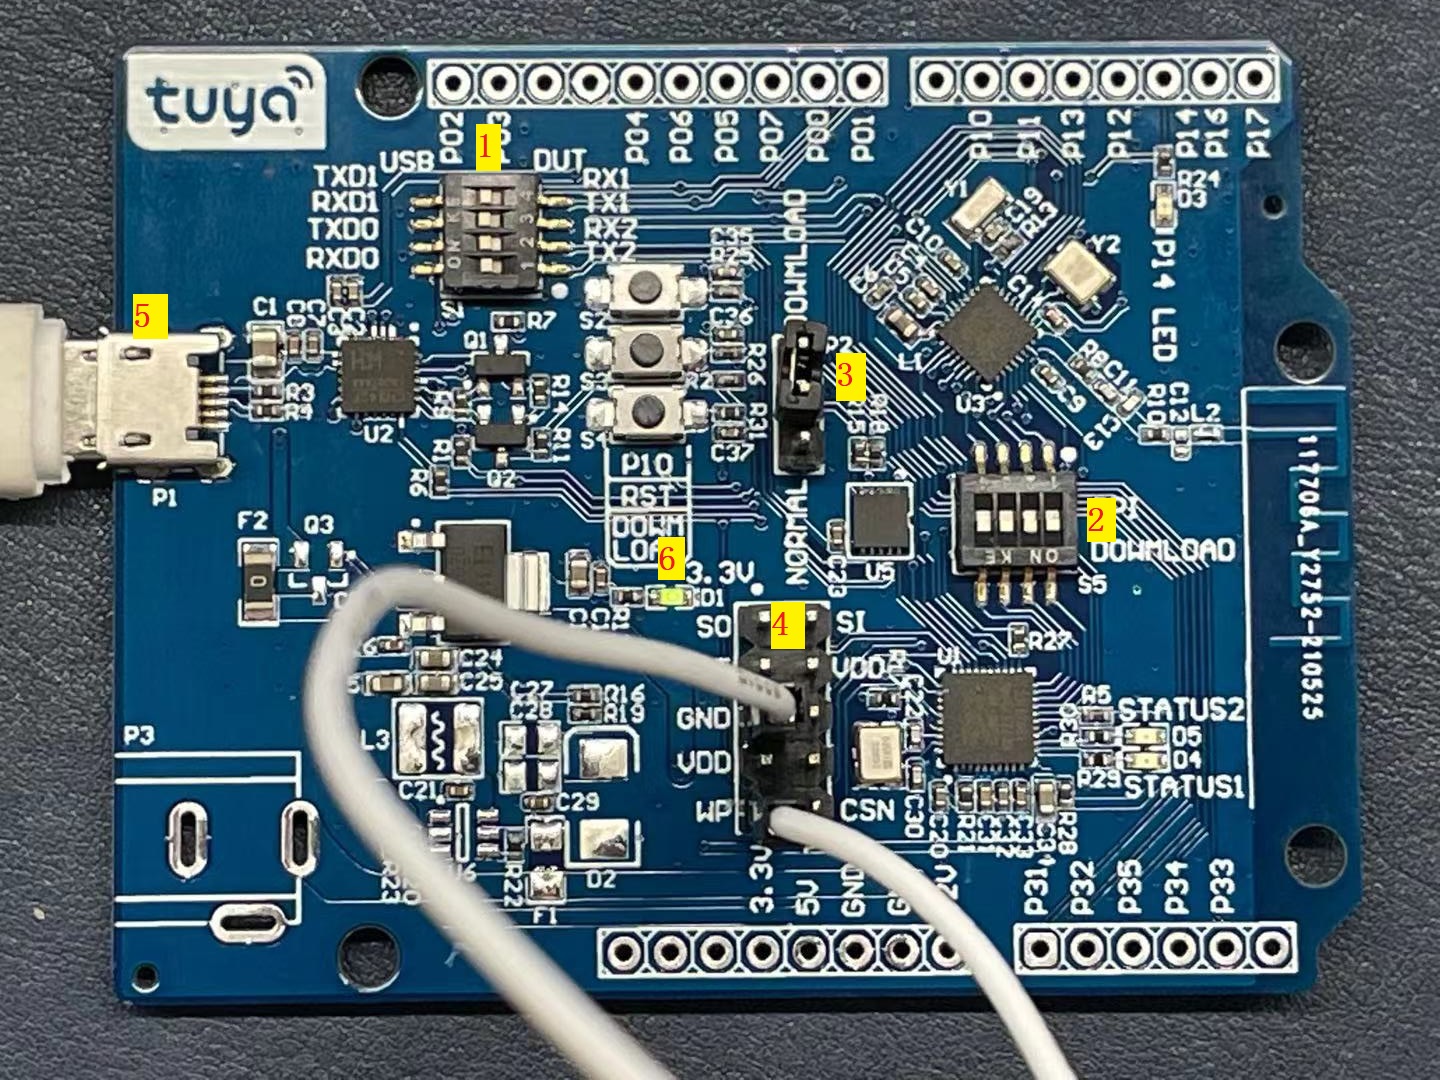 Bluetooth LE SoC Board (BK3432)